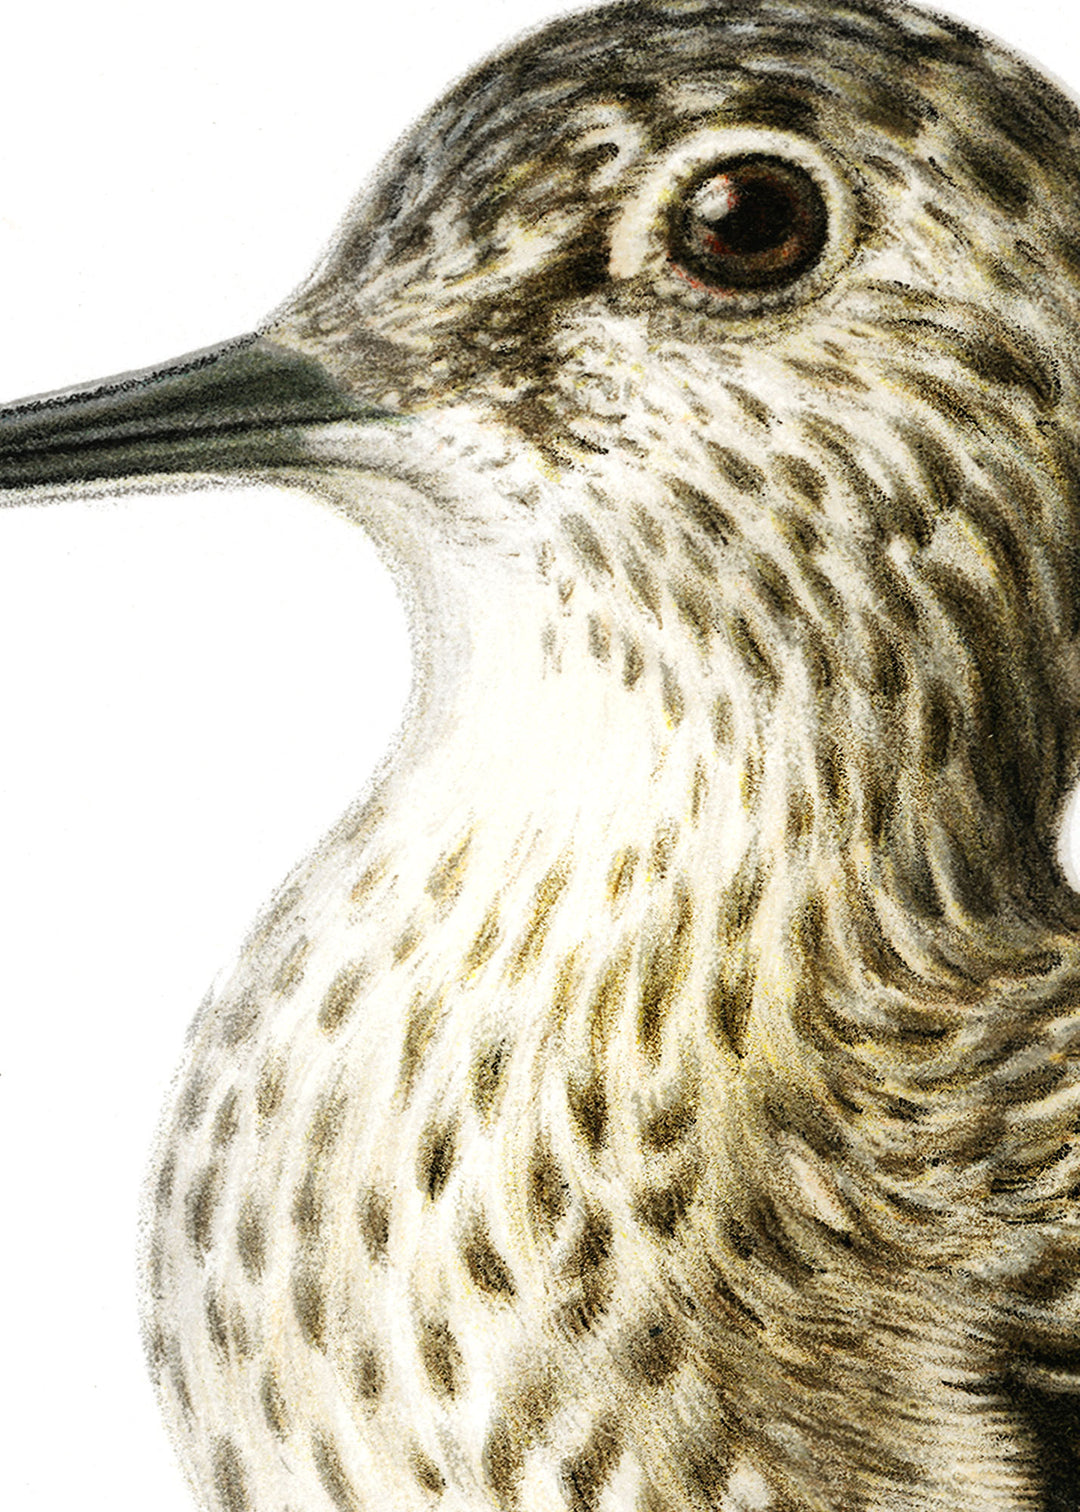 Fågeln Grönbena på klassisk vintage poster/affisch